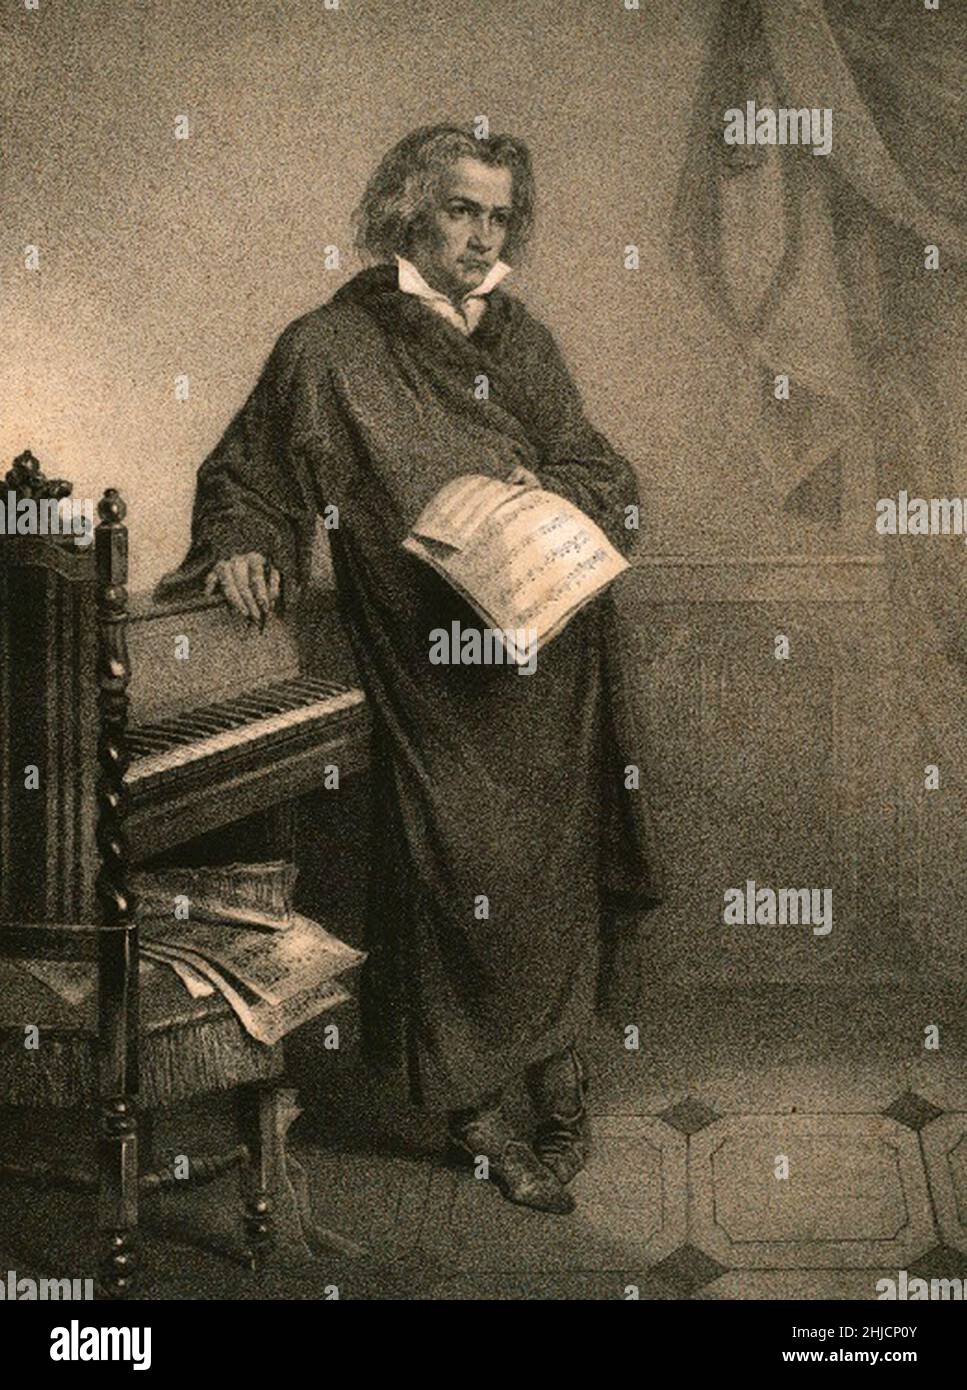 Ludwig van Beethoven (1770-1827) est un compositeur et pianiste virtuose allemand.Il demeure l'un des compositeurs les plus célèbres et les plus influents.Vers 1800, son audition a commencé à se détériorer et, au cours de la dernière décennie de sa vie, il était presque totalement sourd.Il a abandonné la conduite et l'exécution en public mais a continué à composer; beaucoup de ses œuvres les plus admirées viennent de cette période.Hammann (artiste); J. Hesse (imprimeur), vers 1870. Banque D'Images